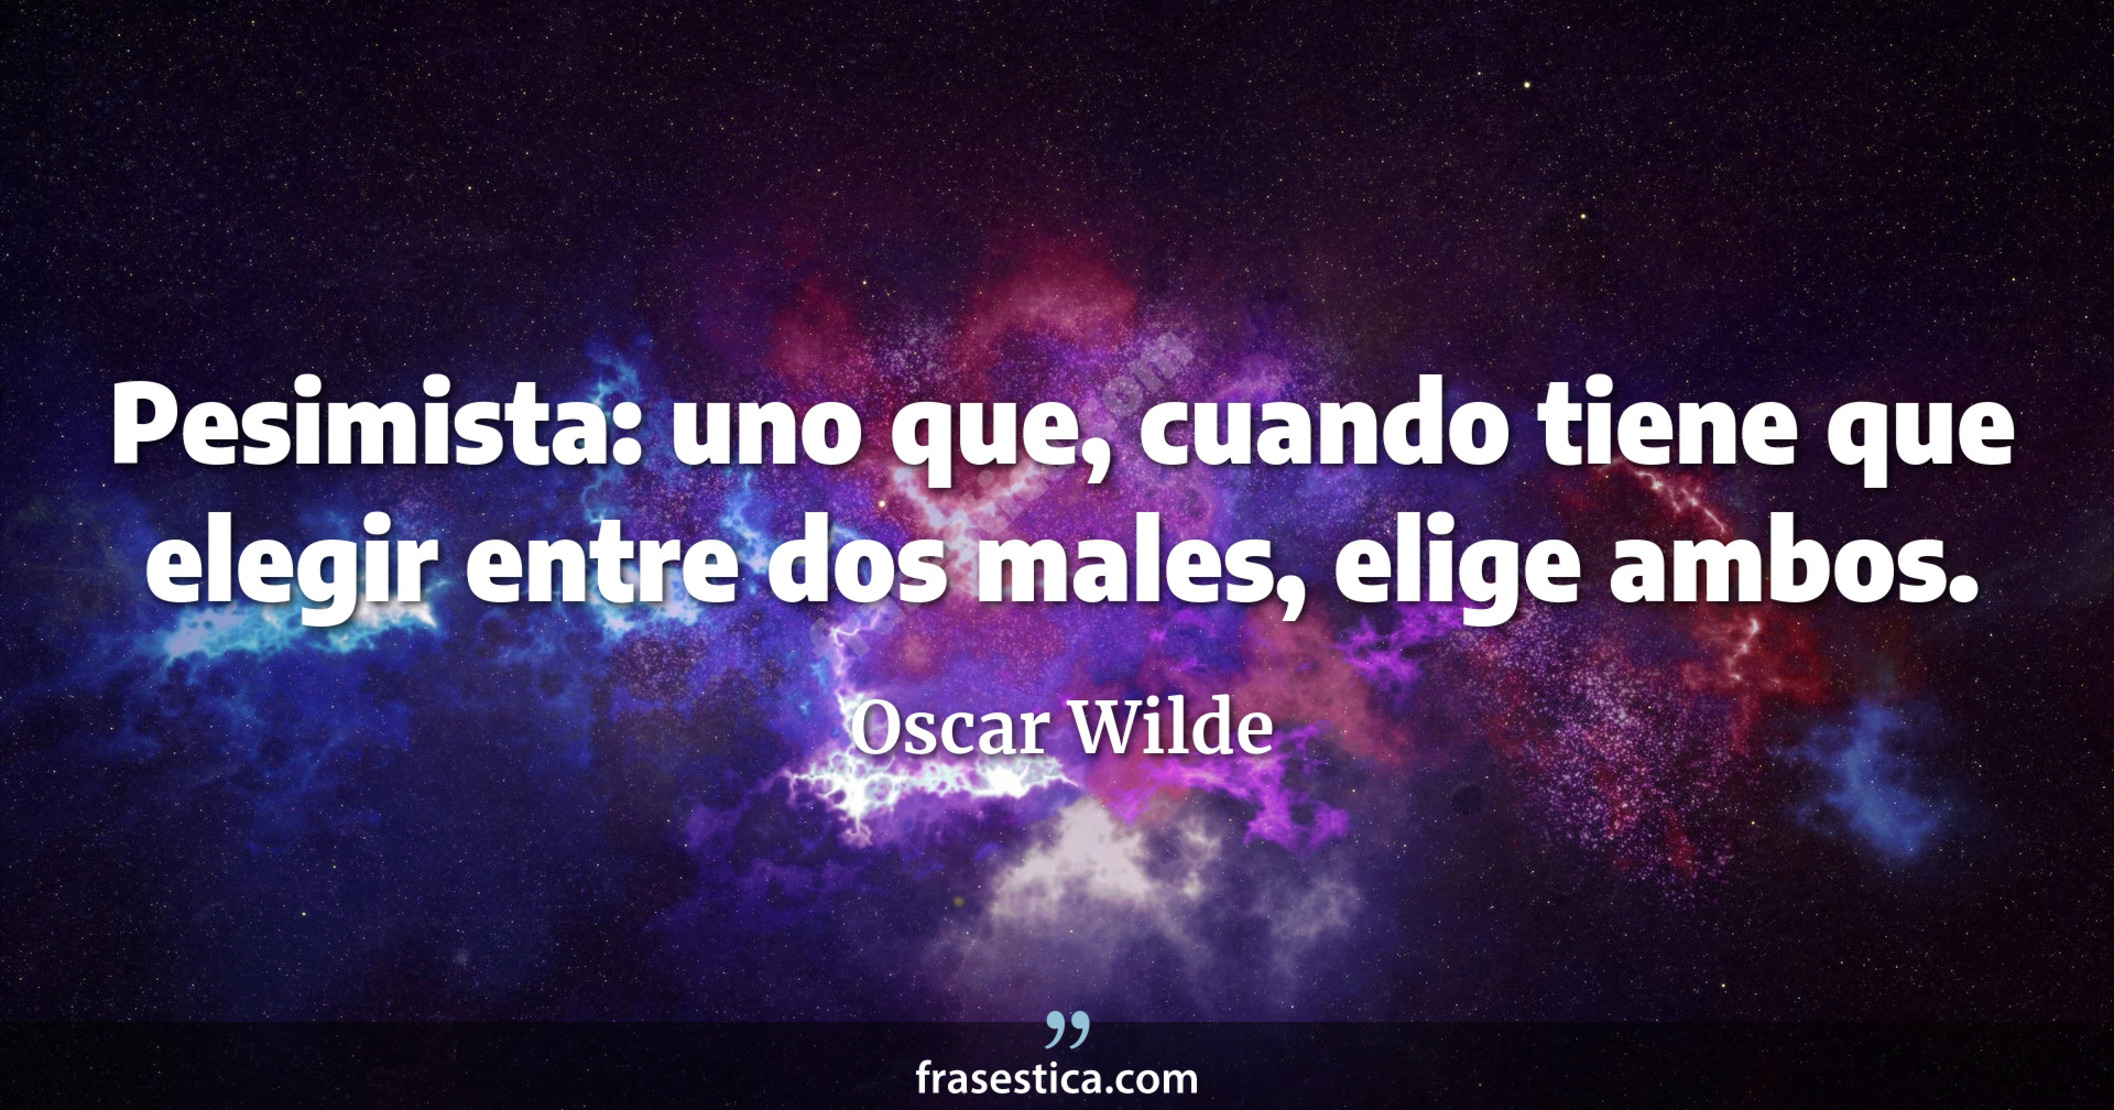 Pesimista: uno que, cuando tiene que elegir entre dos males, elige ambos. - Oscar Wilde